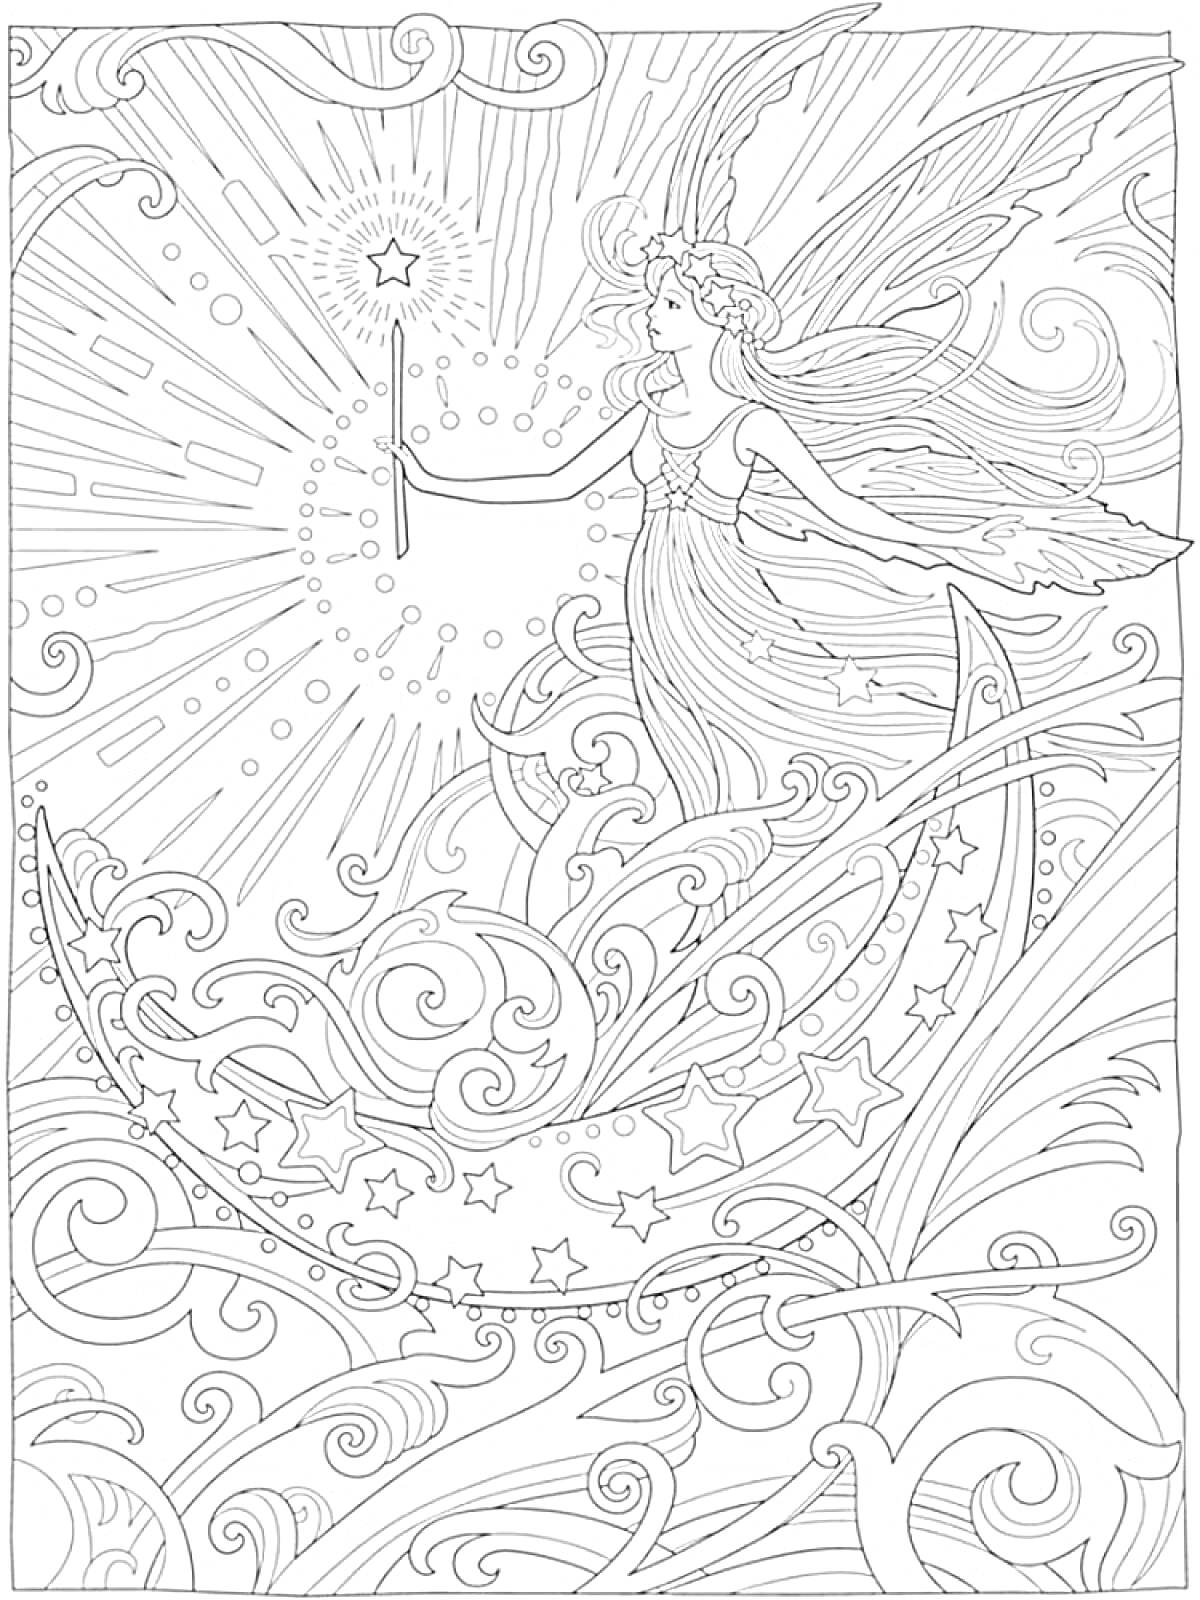 Раскраска Фея с волшебной палочкой на полумесяце, окруженная звездами и завихрениями